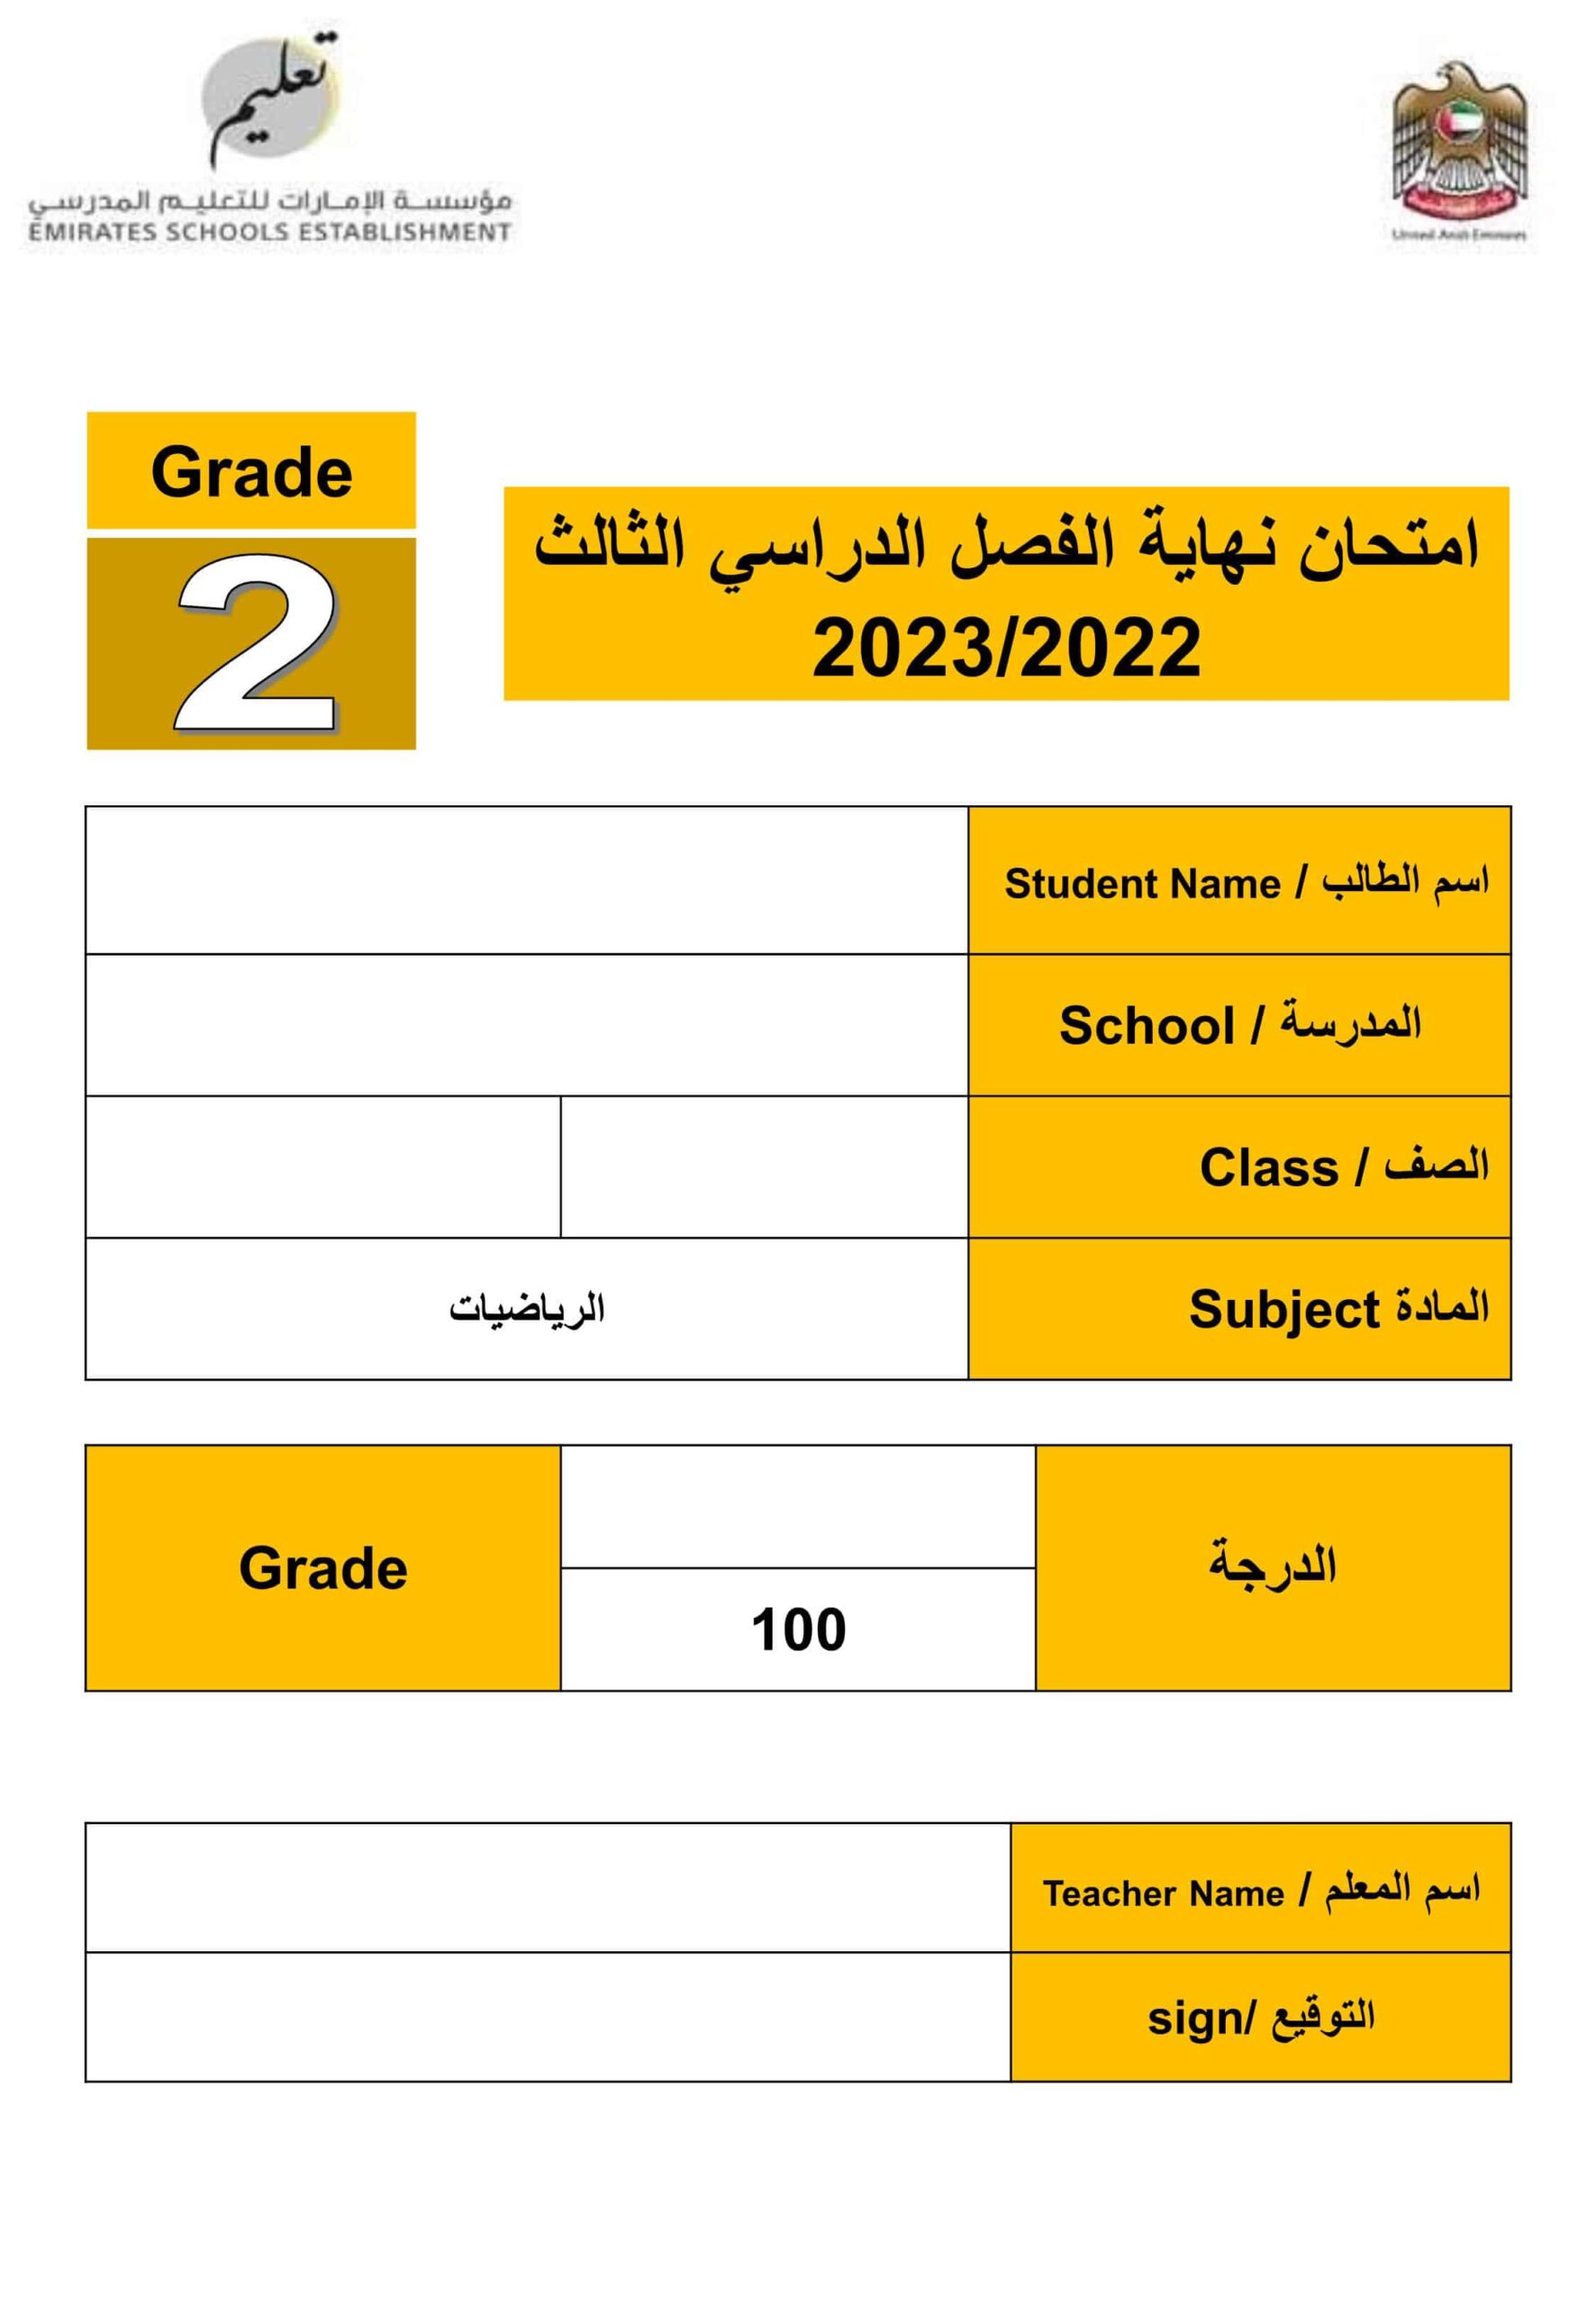 امتحان نهاية الفصل الرياضيات المتكاملة الصف الثاني الفصل الدراسي الثالث 2022-2023